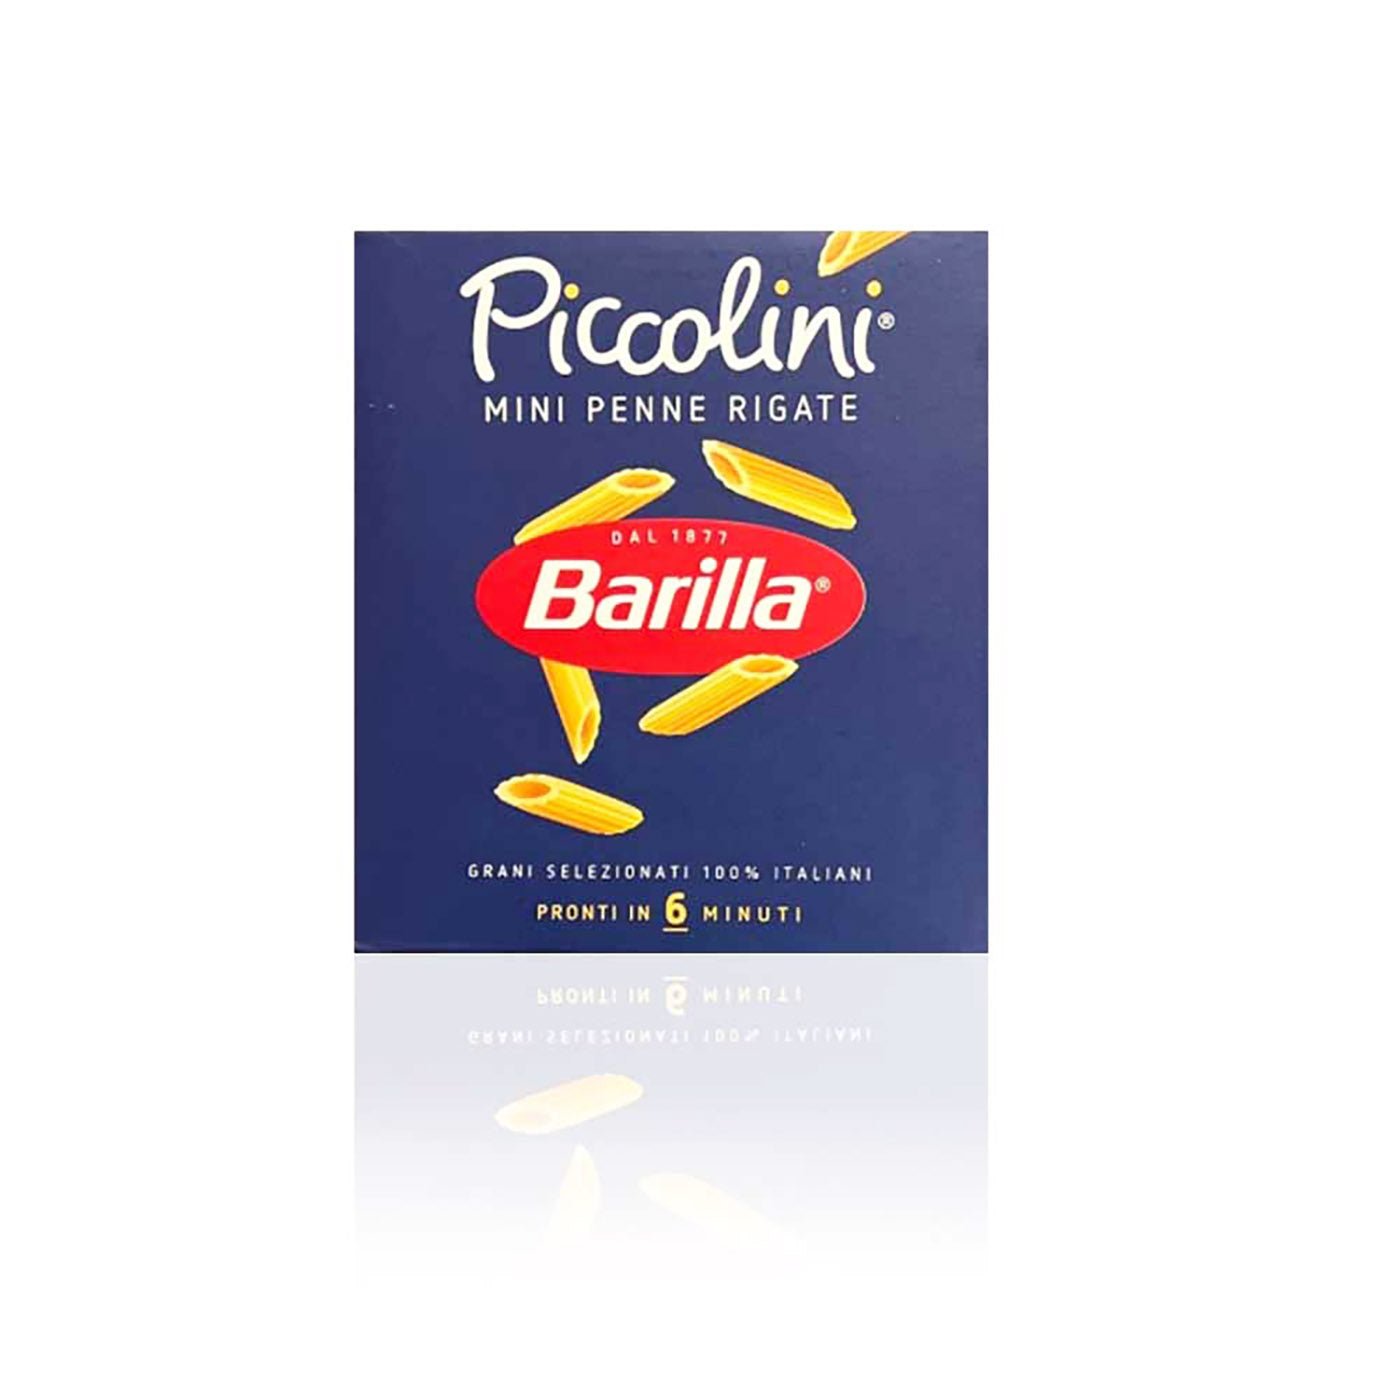 BARILLA Piccolini Penne rigate - 0,50kg - italienisch - einkaufen.de